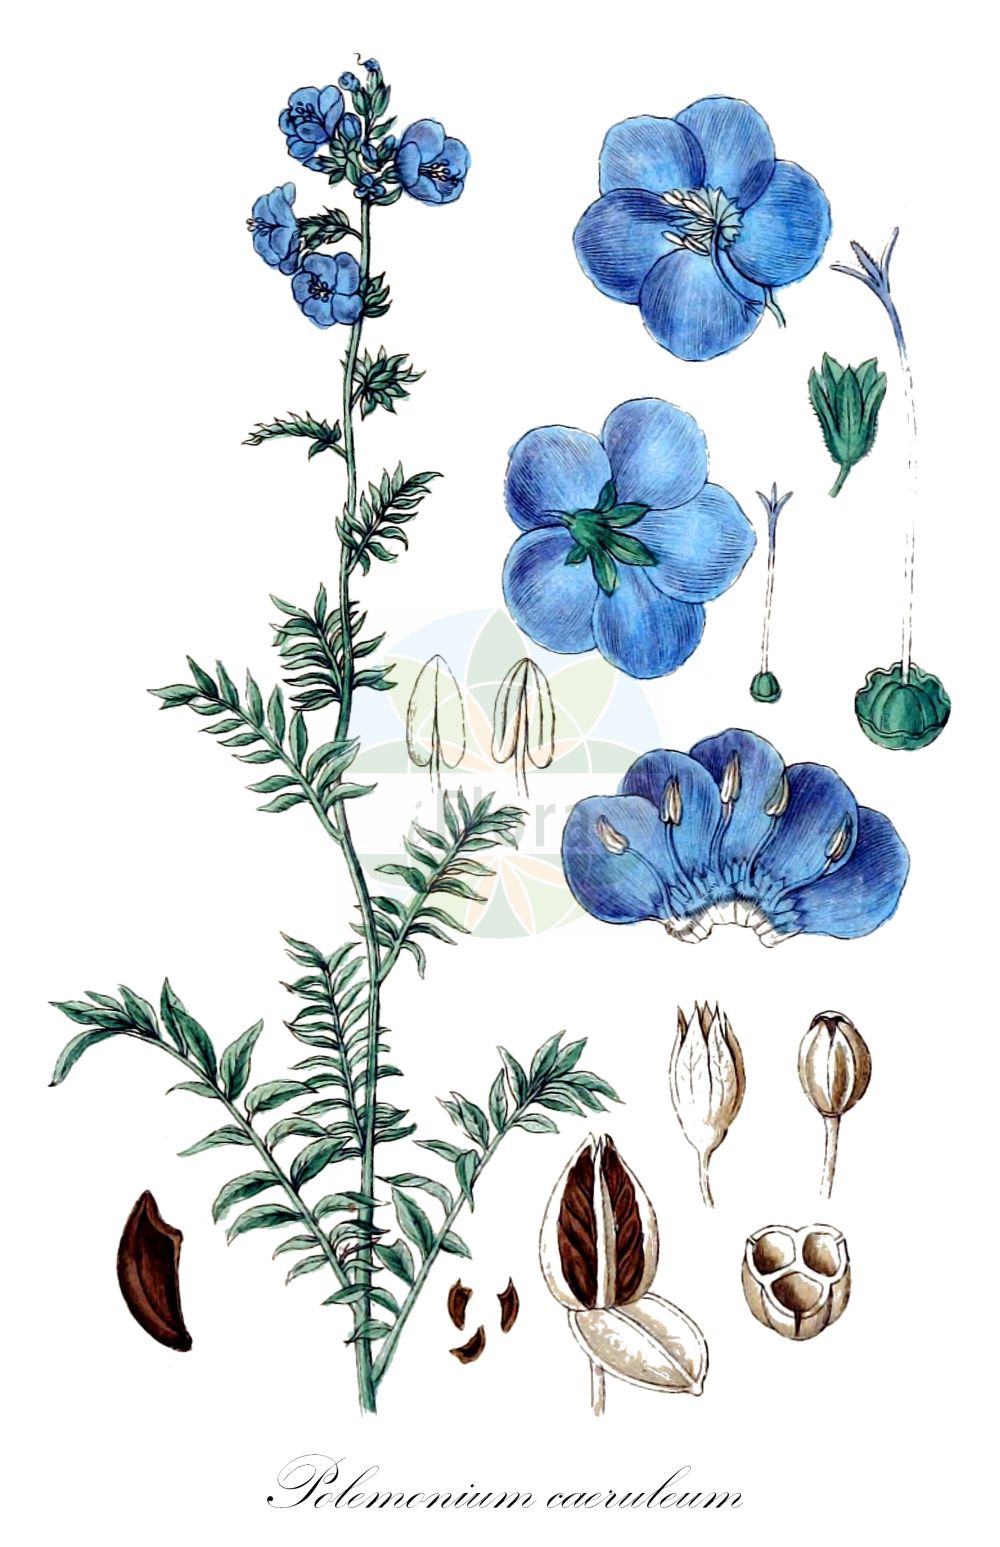 Historische Abbildung von Polemonium caeruleum (Blaue Himmelsleiter - Jacob's-ladder). Das Bild zeigt Blatt, Bluete, Frucht und Same. ---- Historical Drawing of Polemonium caeruleum (Blaue Himmelsleiter - Jacob's-ladder). The image is showing leaf, flower, fruit and seed.(Polemonium caeruleum,Blaue Himmelsleiter,Jacob's-ladder,Polemonium caeruleum,Polemonium caucasicum,Blaue Himmelsleiter,Blaues Sperrkraut,Jacob's-ladder,Blue Jacob's Ladder,Charity,Tall Jacob's-ladder,Polemonium,Himmelsleiter,Jacob's-ladder,Polemoniaceae,Himmelsleitergewächse,Phlox family,Blatt,Bluete,Frucht,Same,leaf,flower,fruit,seed,Sturm (1796f))